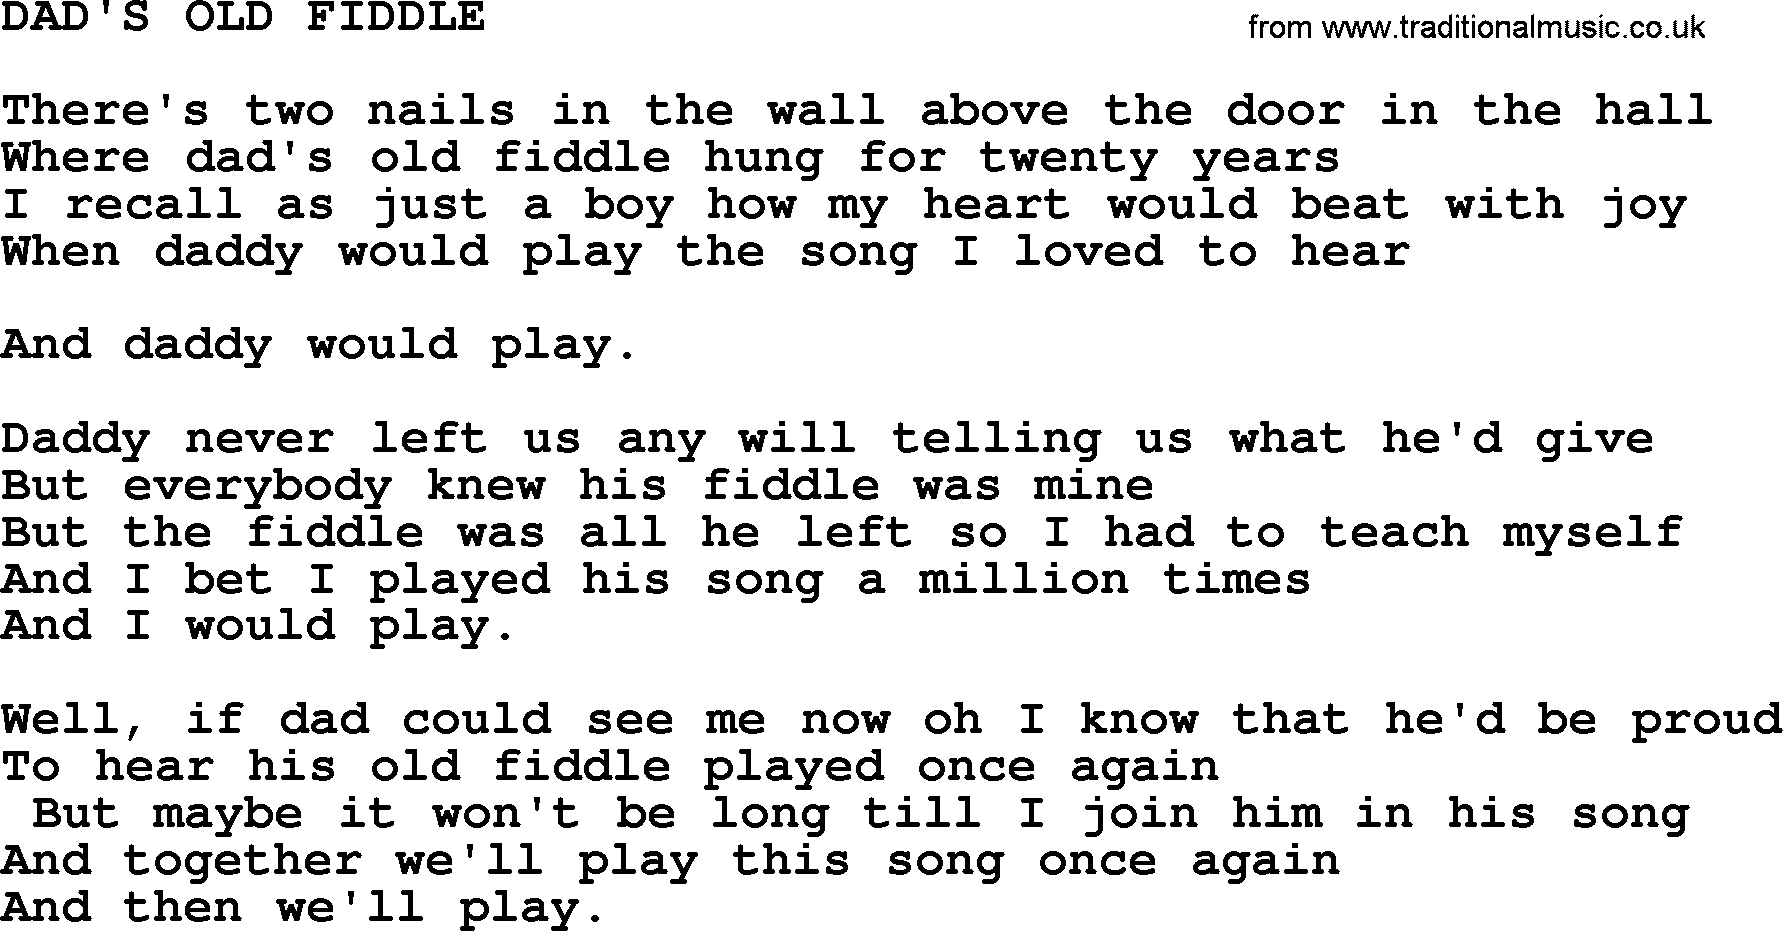 Merle Haggard song: Dad's Old Fiddle, lyrics.